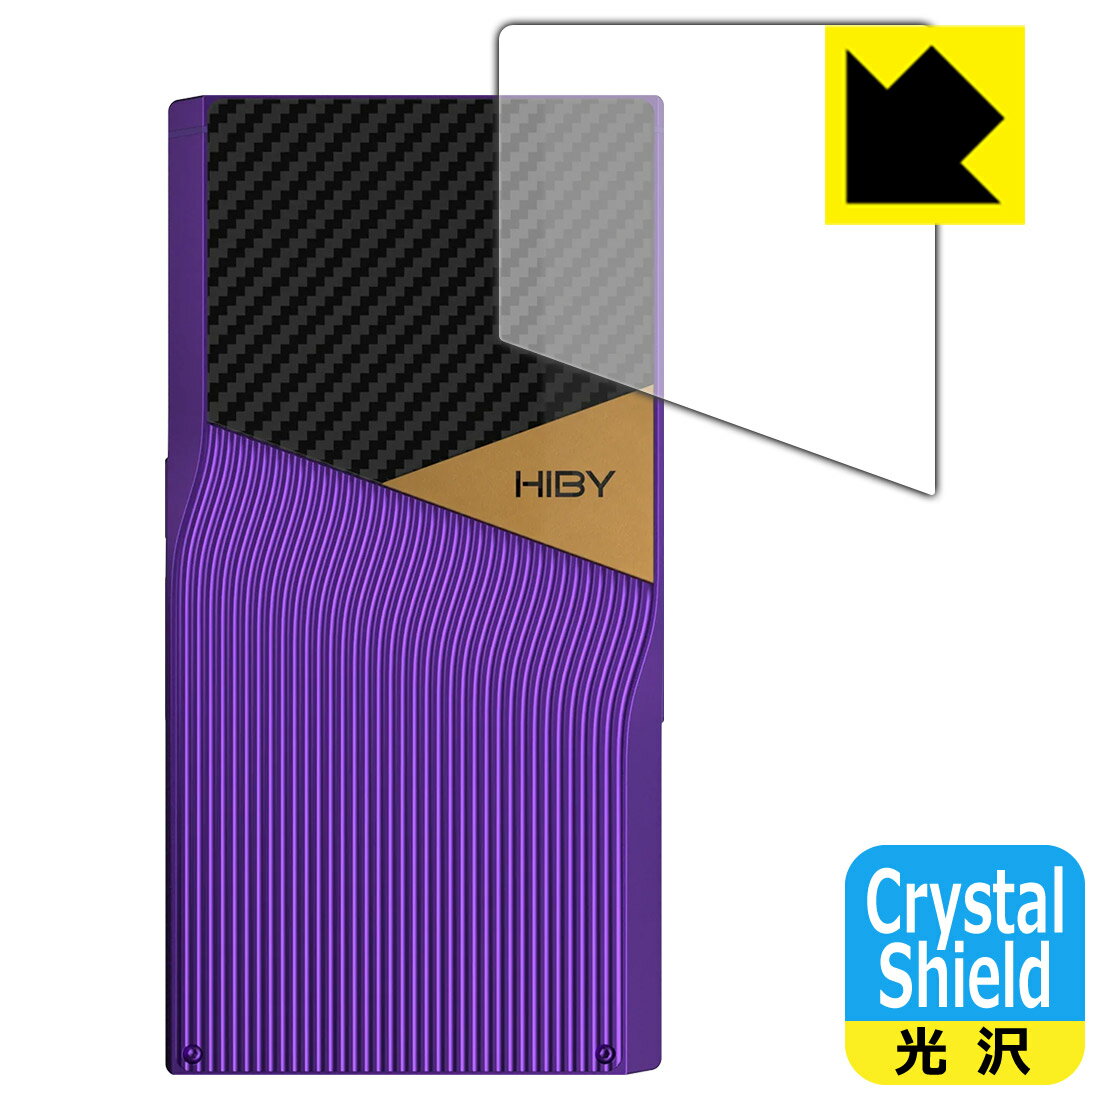 PDAH[ HiBy R6 Pro II Ή Crystal Shield ی tB [wʗp]  { А